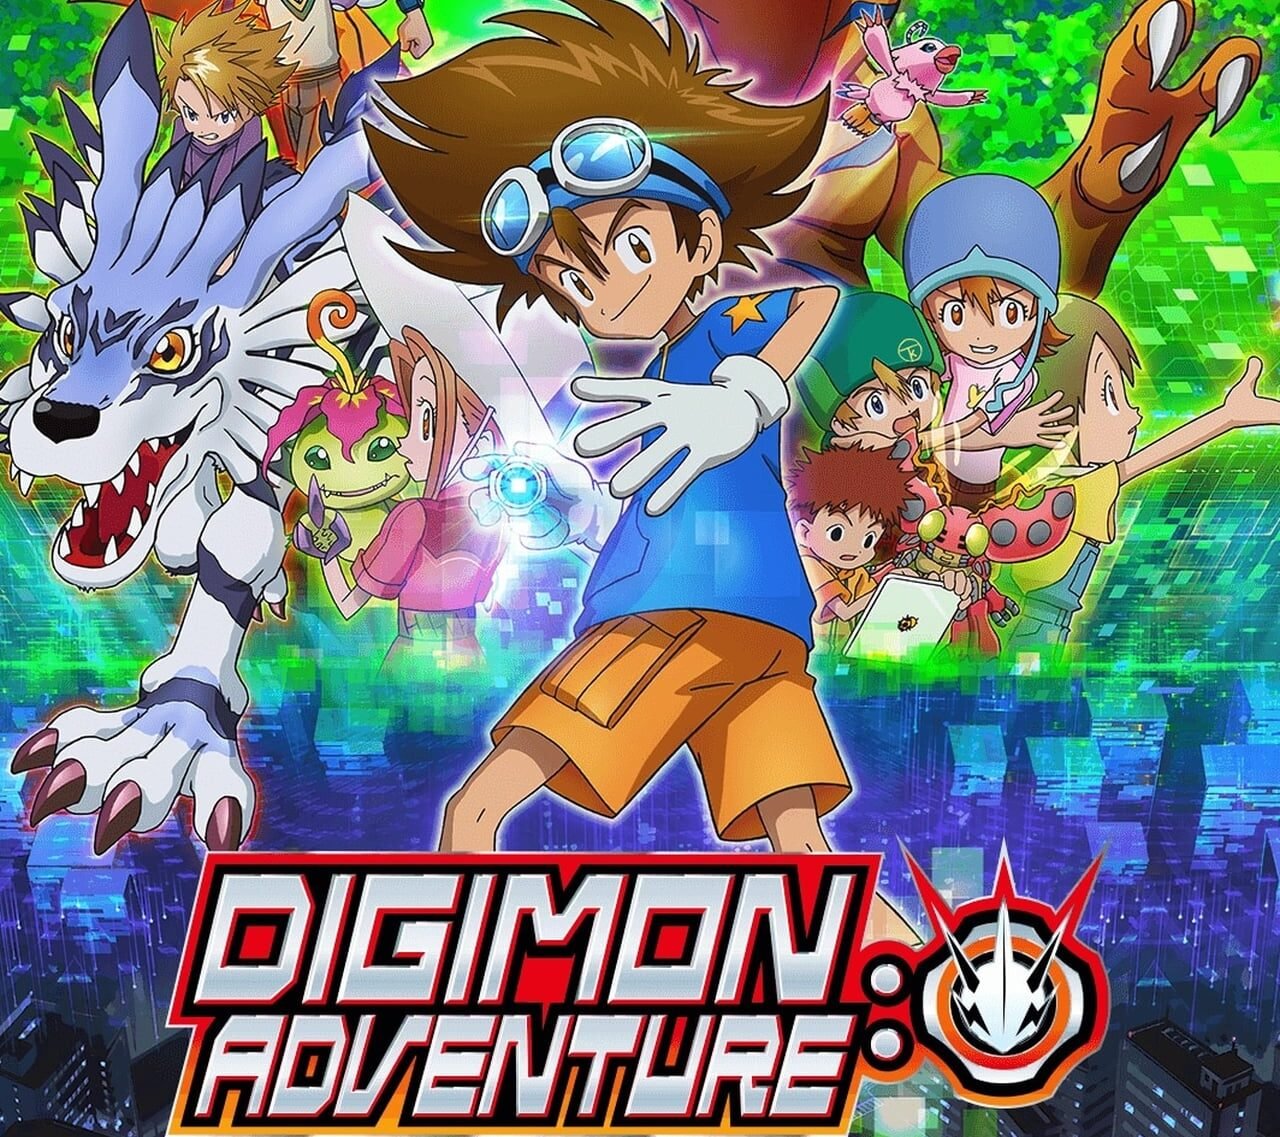 Episódio 34 de Digimon Adventure (2020): Data e Hora de